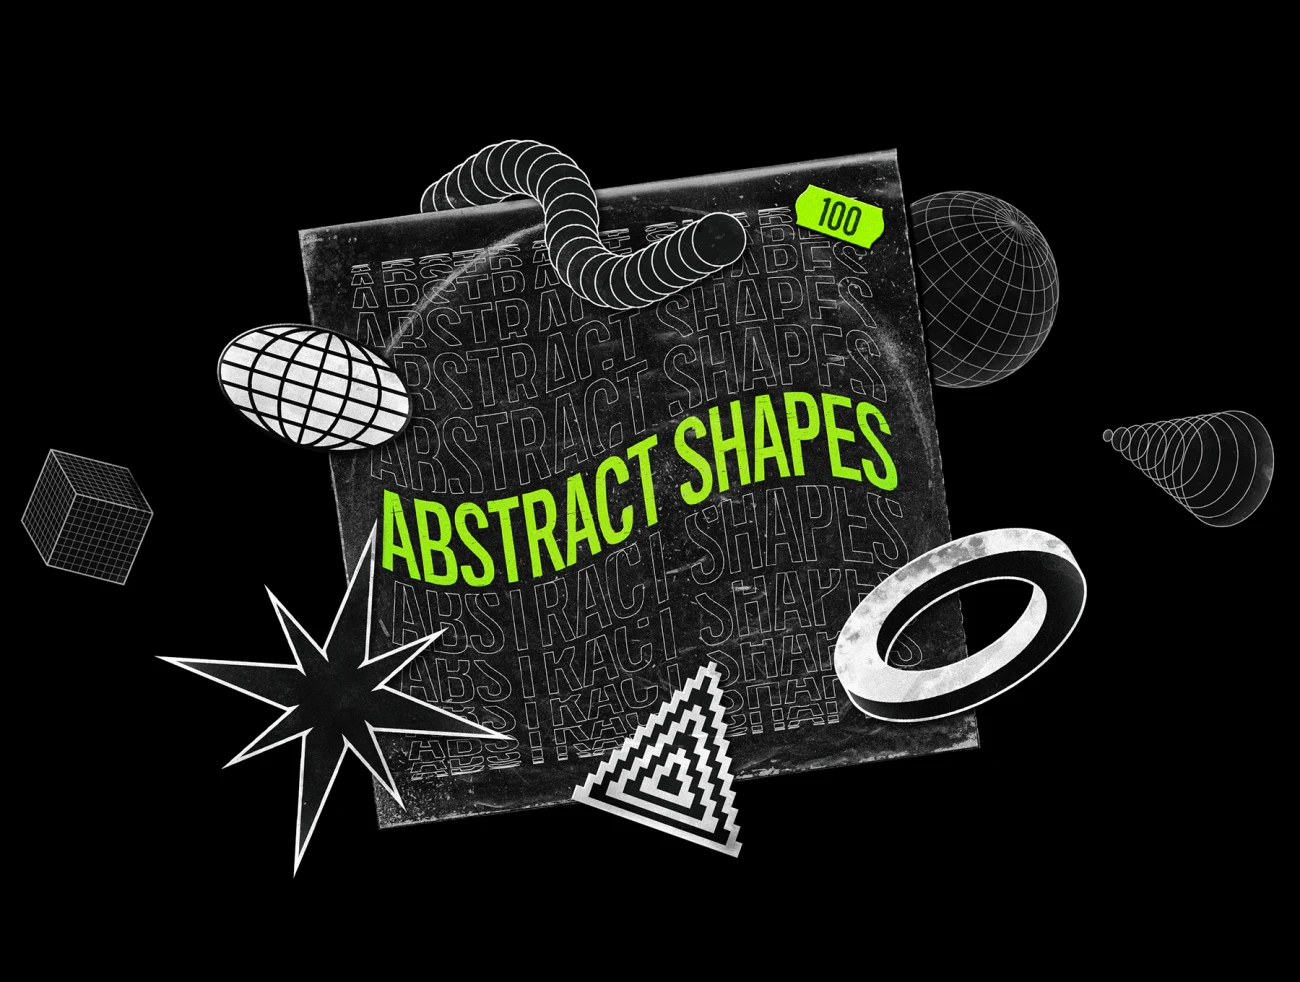 Abstract Shapes collection 抽象形状集合适合创意海报社交媒体风格提升-海报素材、背景素材、设计元素-到位啦UI